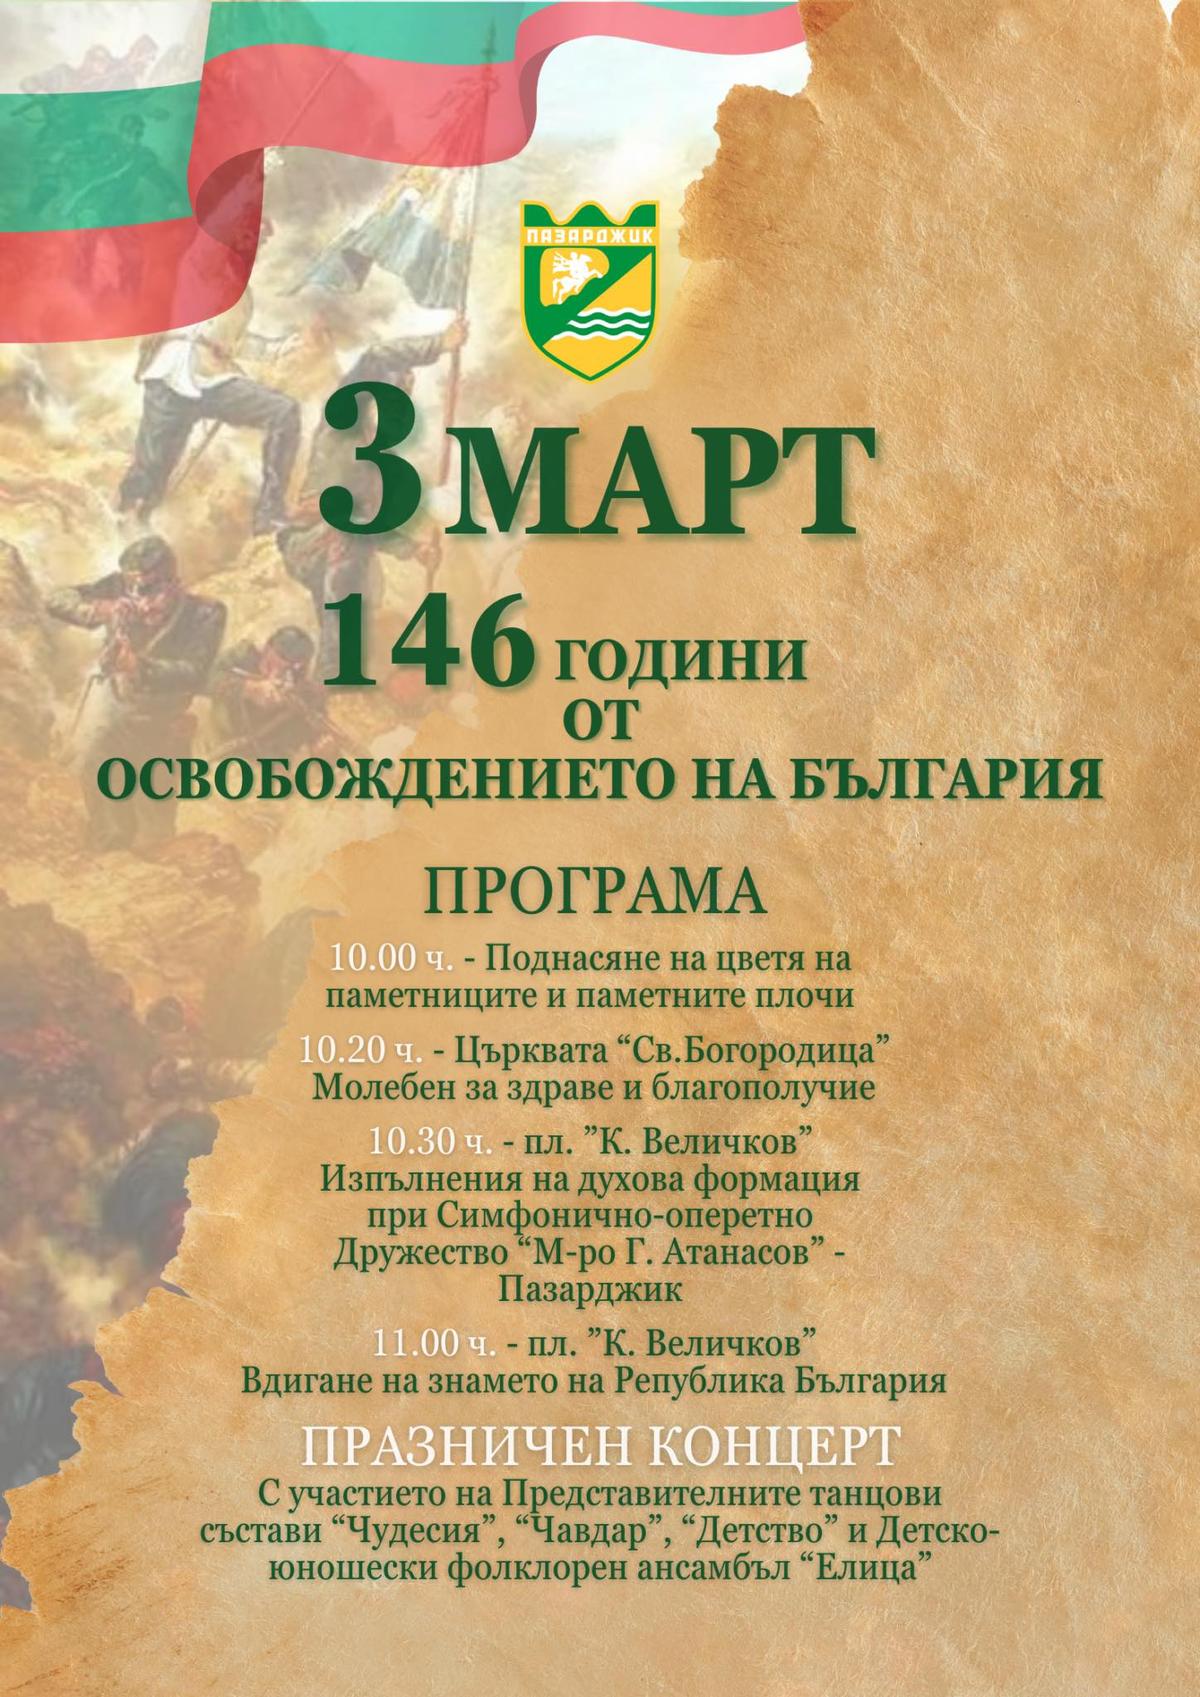 Кметът на Община Пазарджик, заедно с екипа си, кани всички жители и гости на града да се присъединят към празненствата по повод Националния празник на Република България